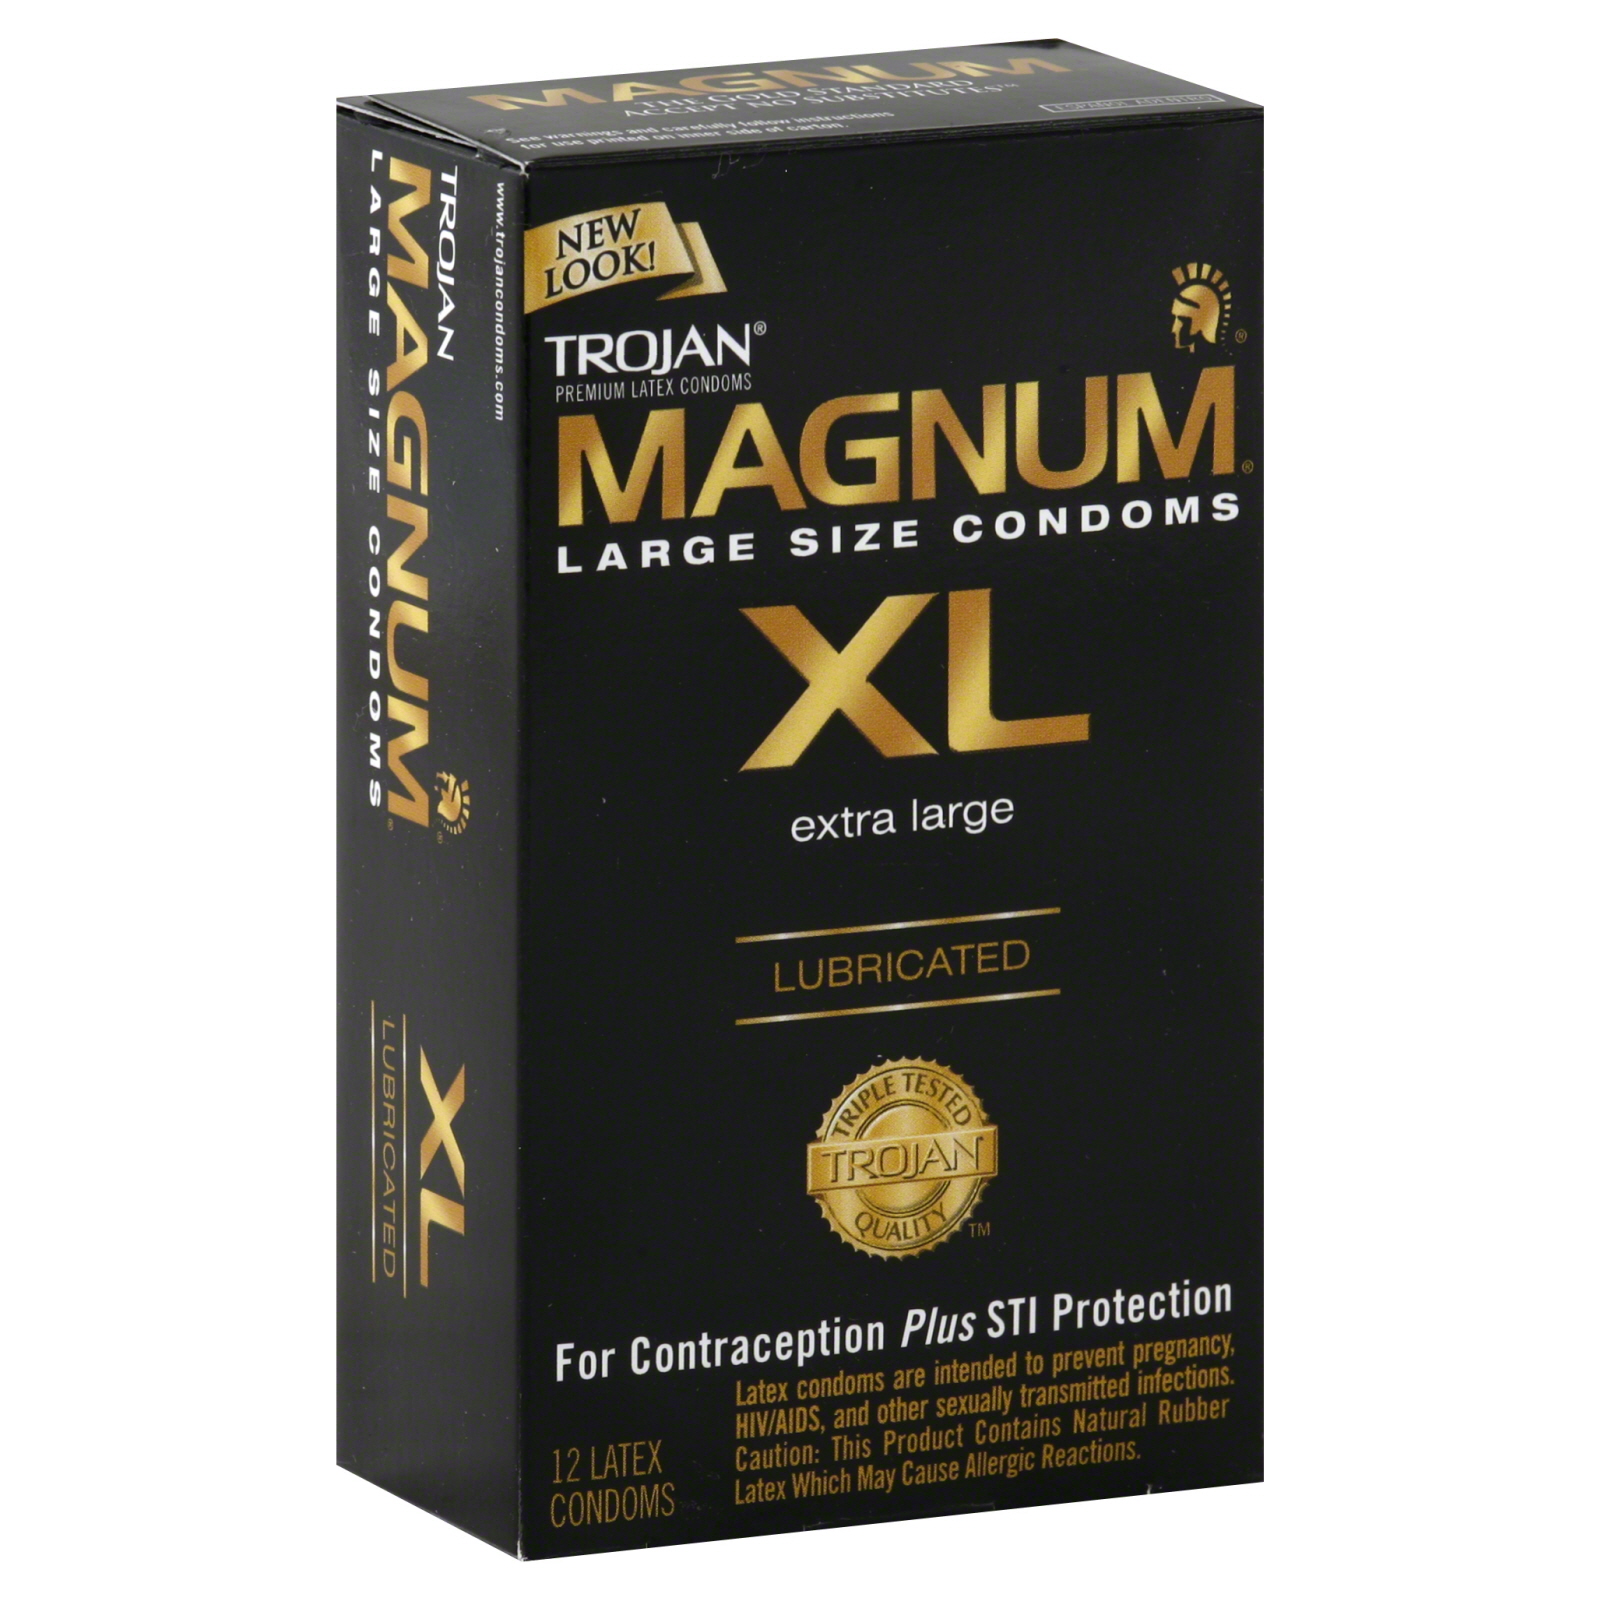 Magnum XL Condoms, Premium Latex, Extra Large Size, Lubricated, 12 condoms